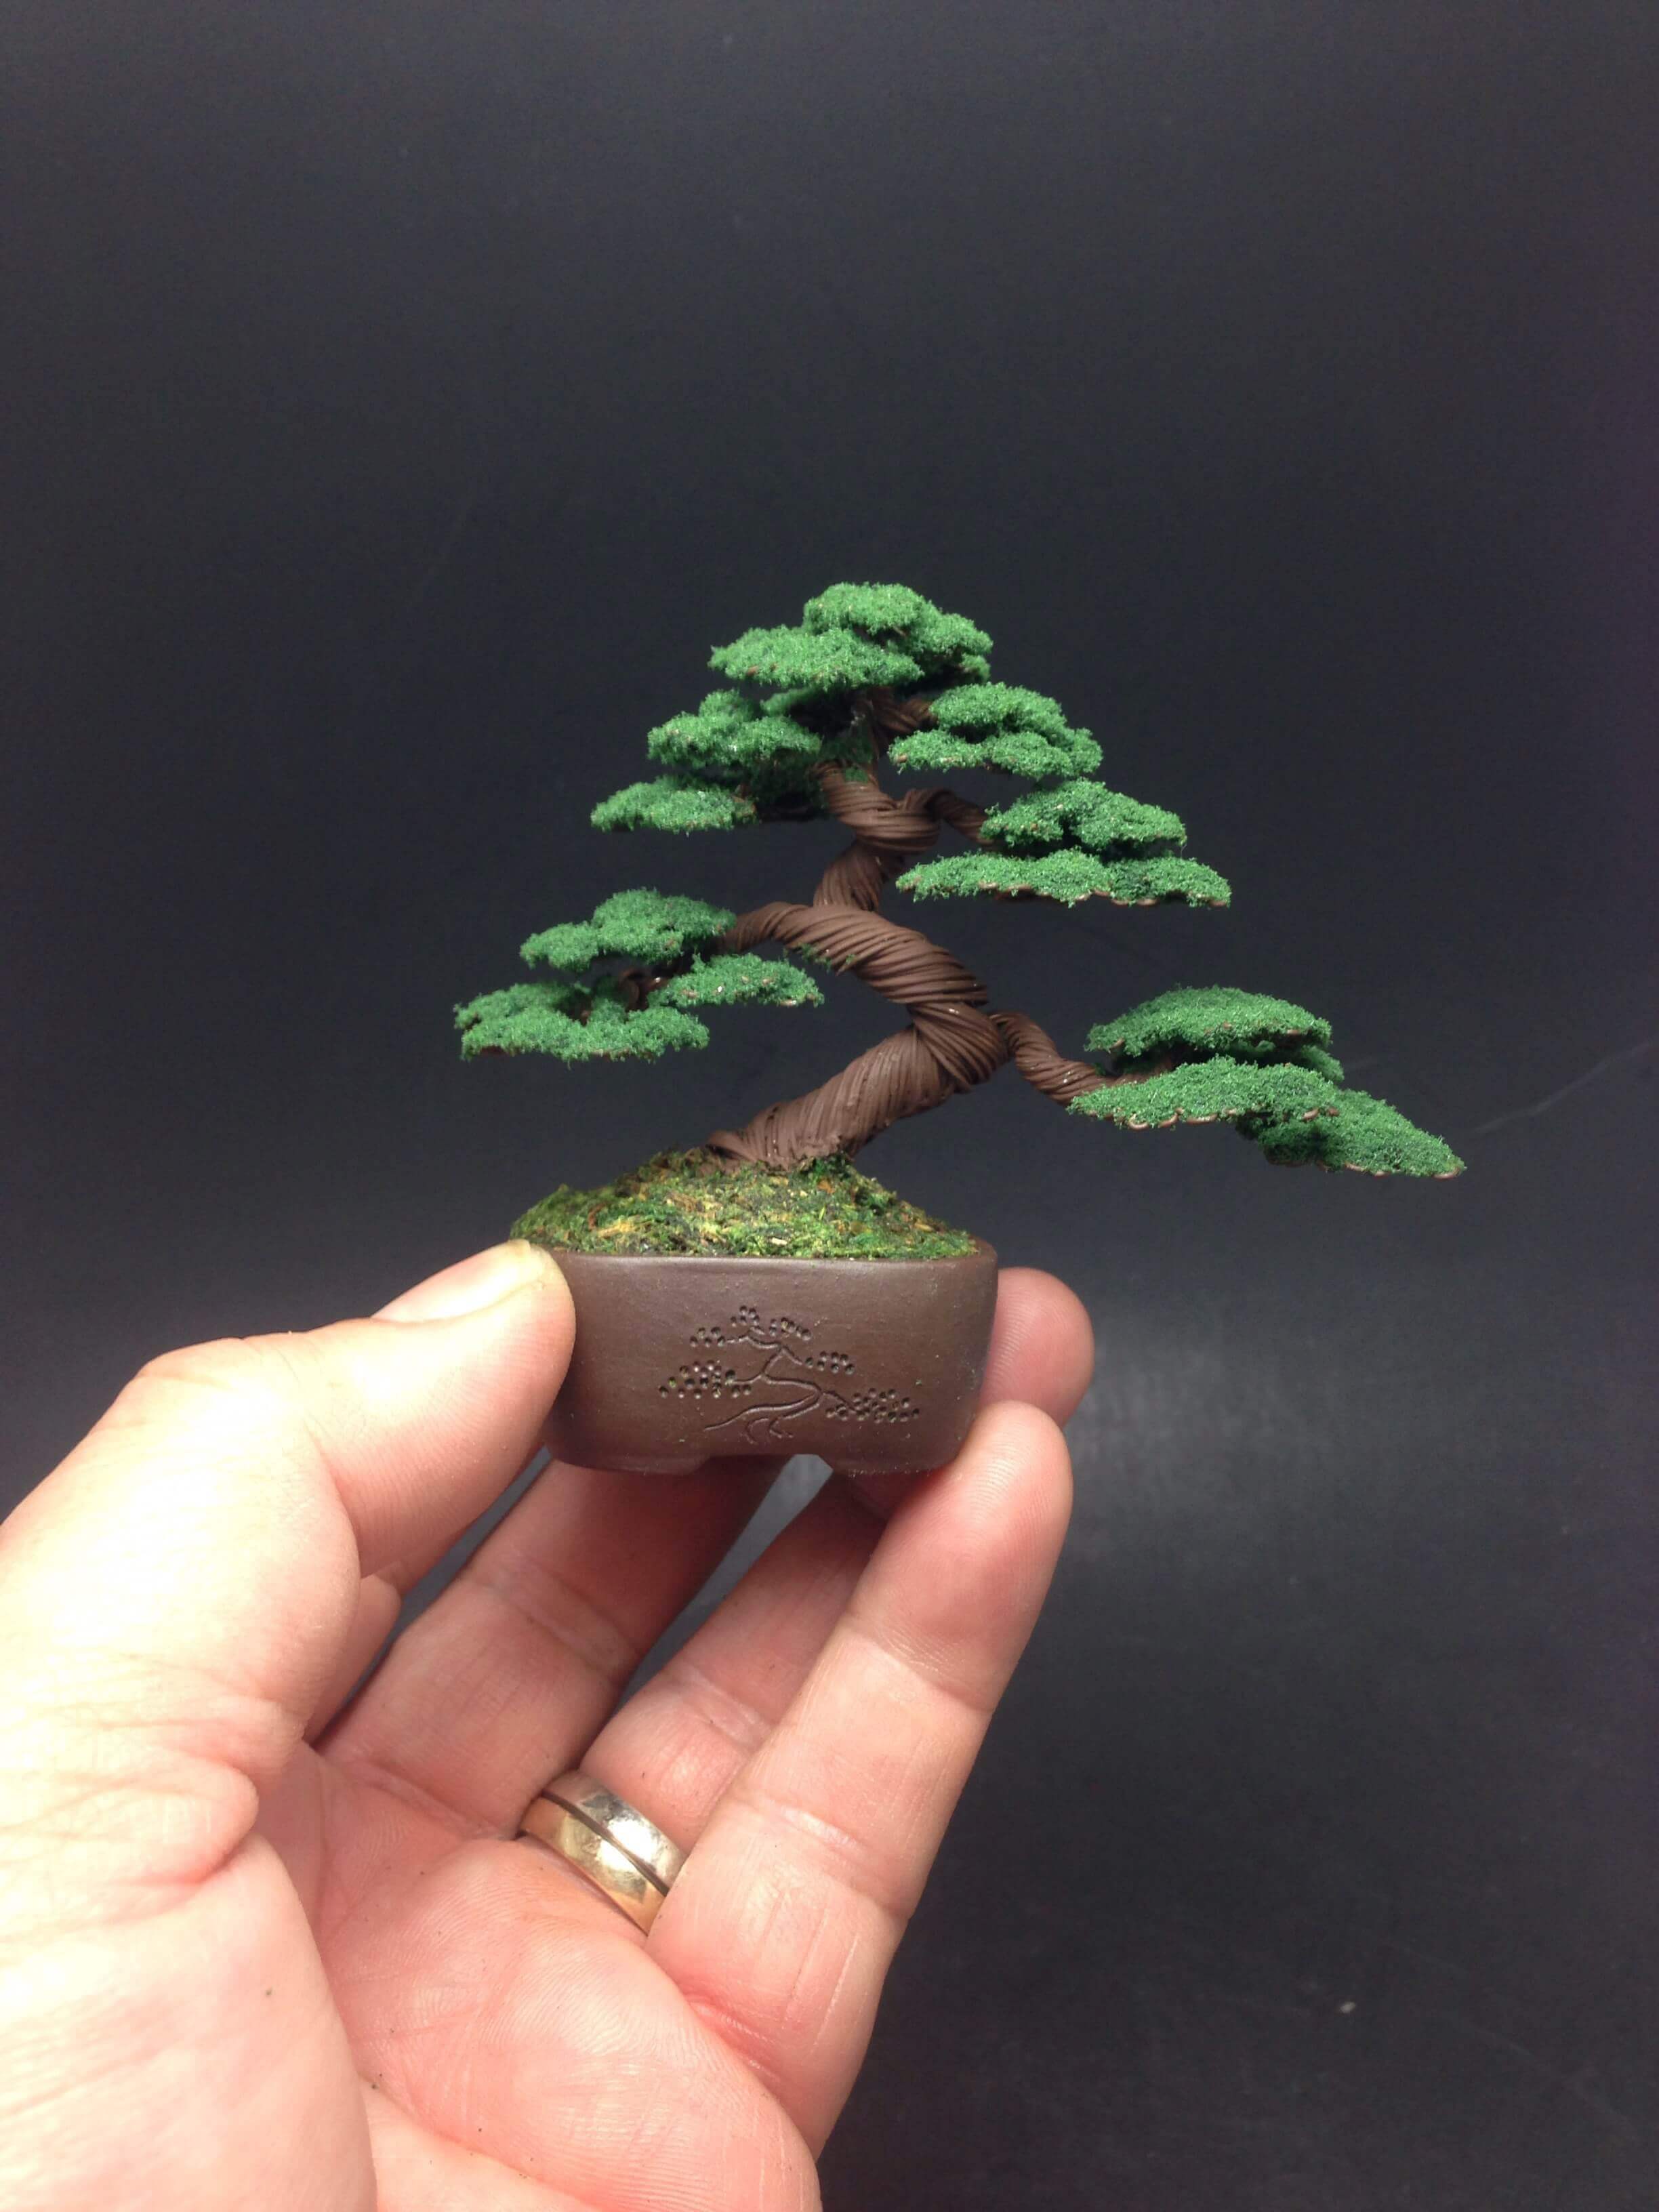 уникальные, искусственные мини-деревья в стилистике бонсай